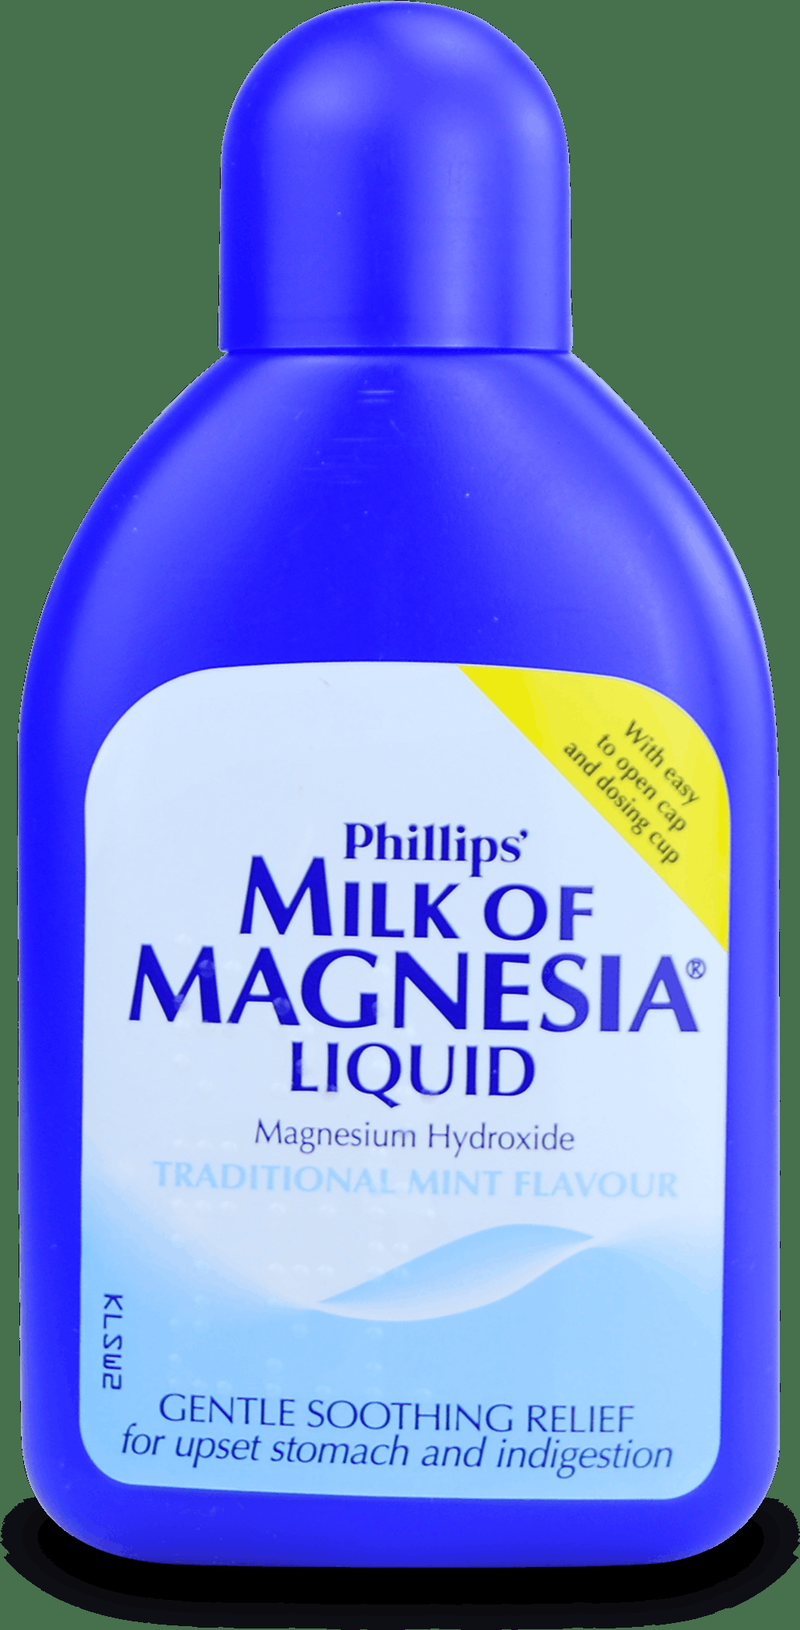 Zutaten von Phillips Milk of Magnesia